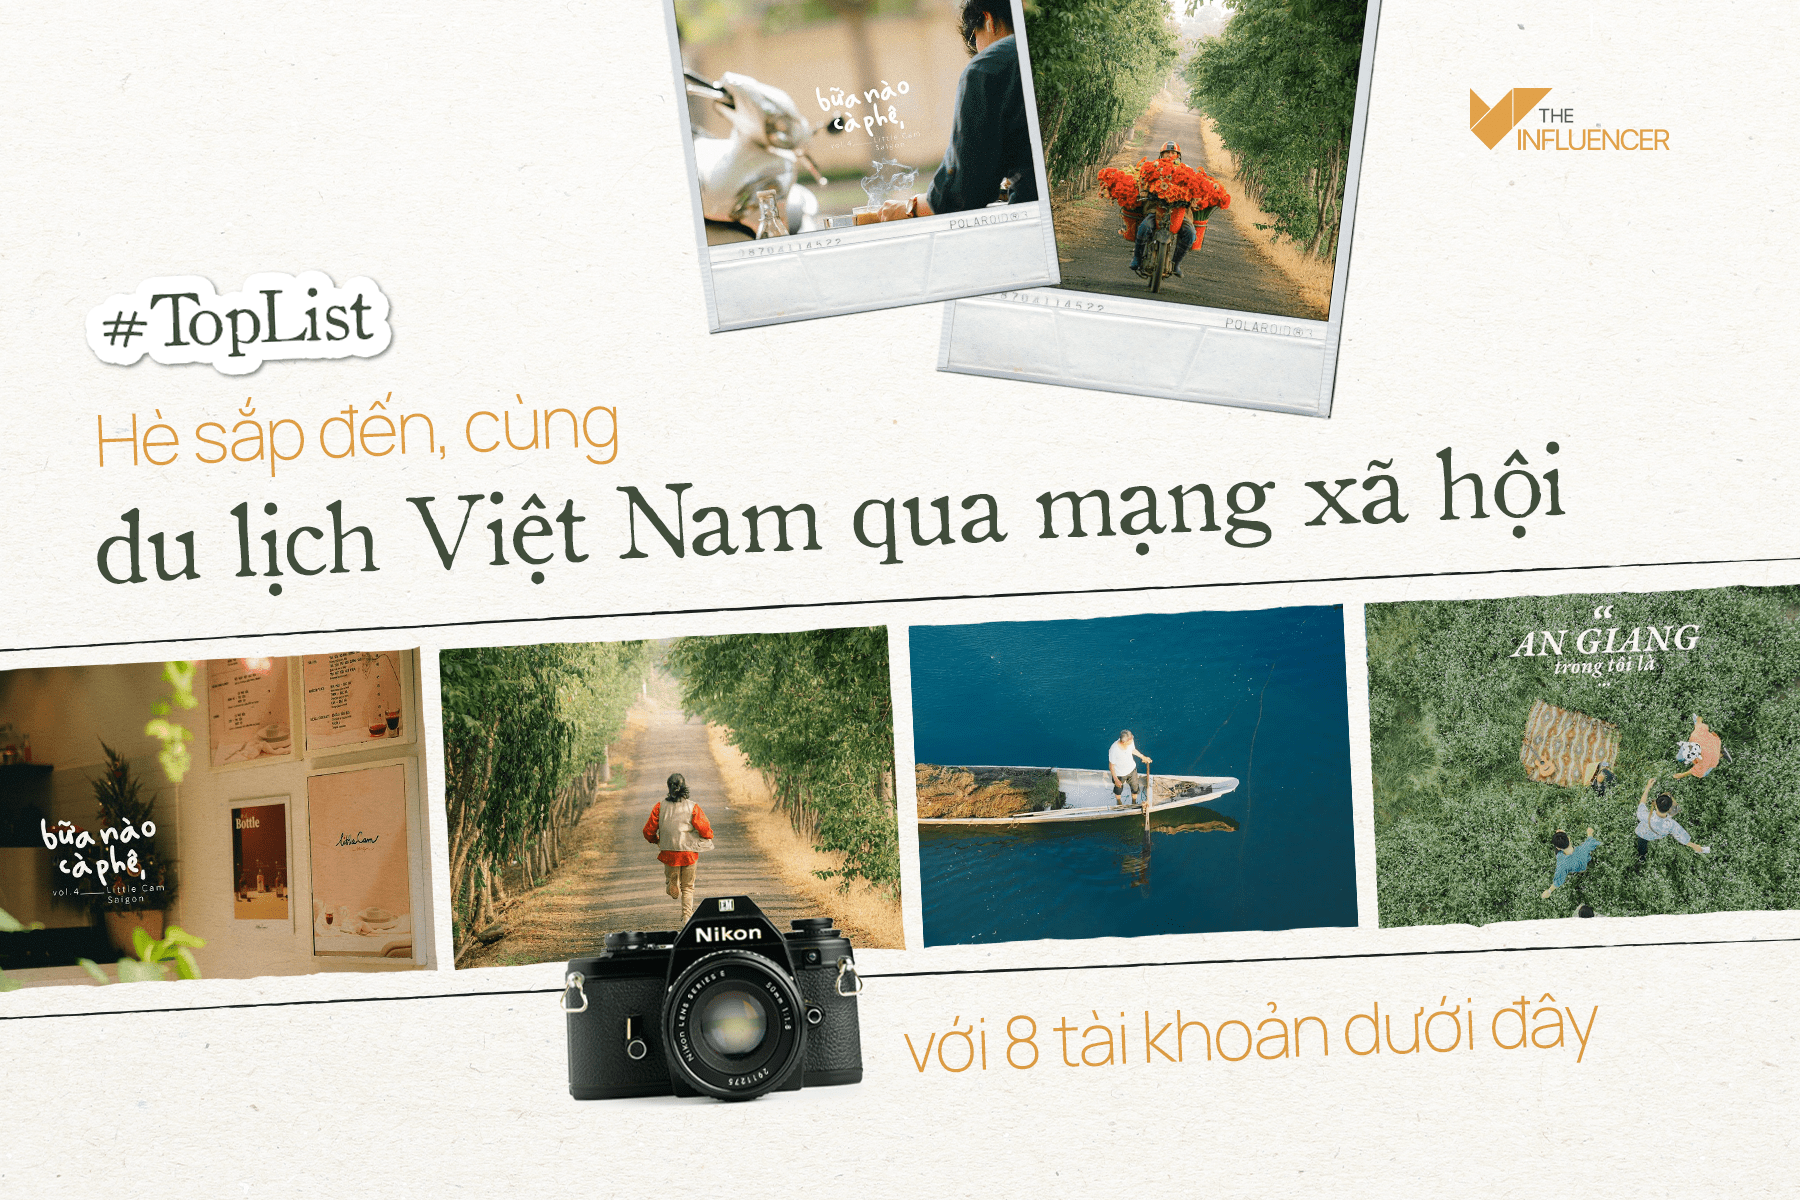 #Toplist: Hè sắp đến, cùng du lịch Việt Nam qua mạng xã hội với 8 tài khoản dưới đây